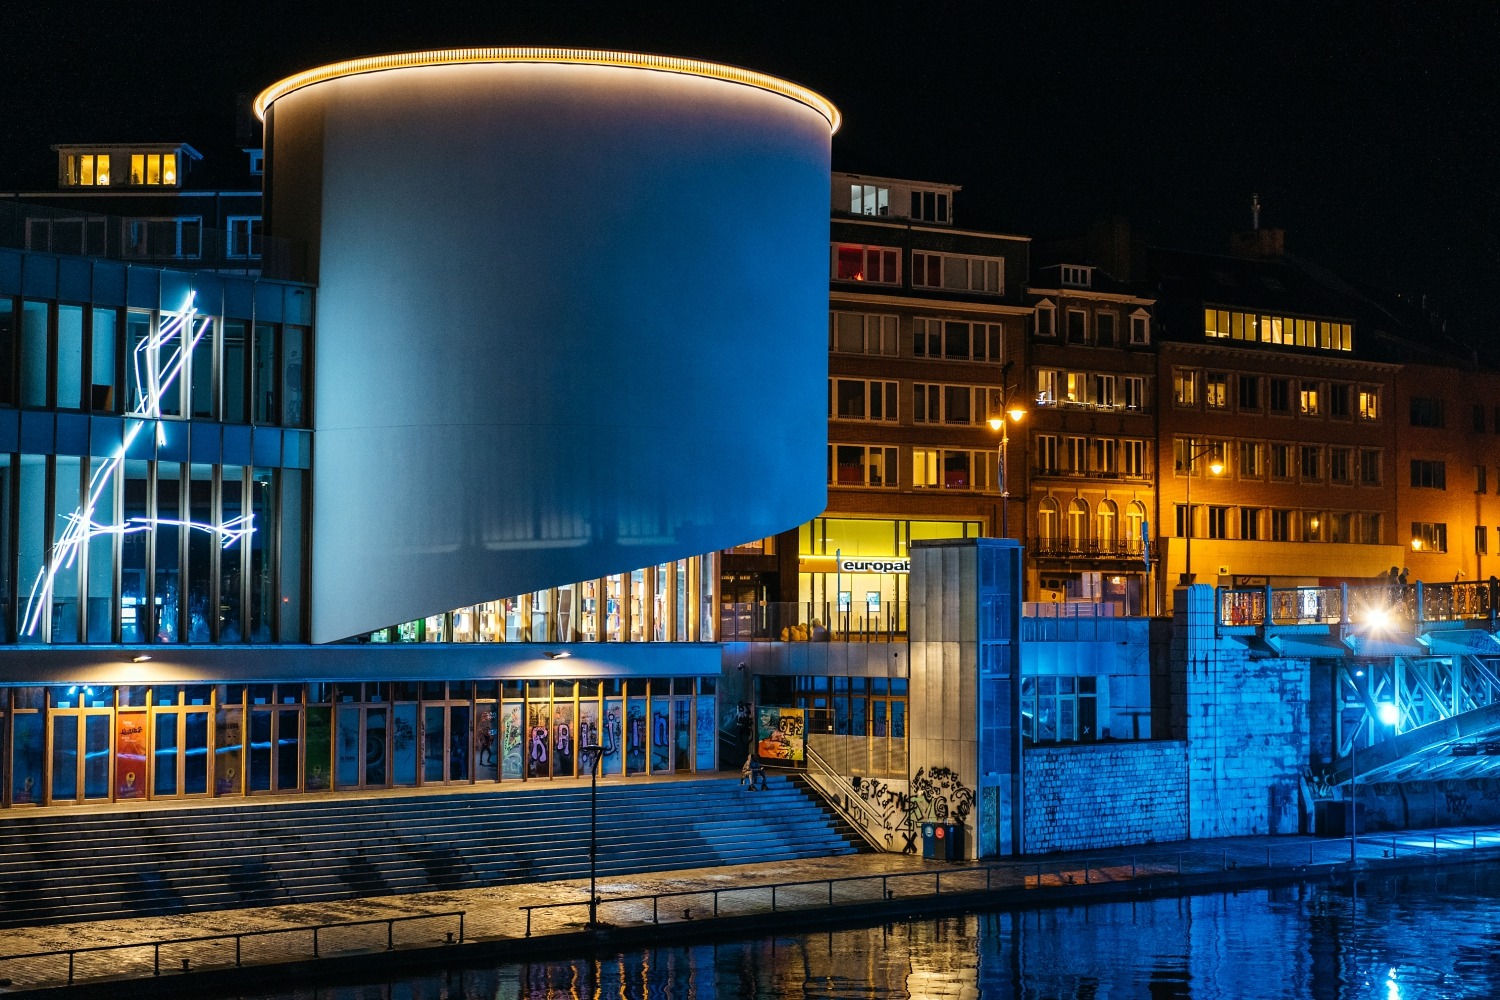 Namur en lumière parcours nocturne Wallonie citadelle veille ville artistique illuminations